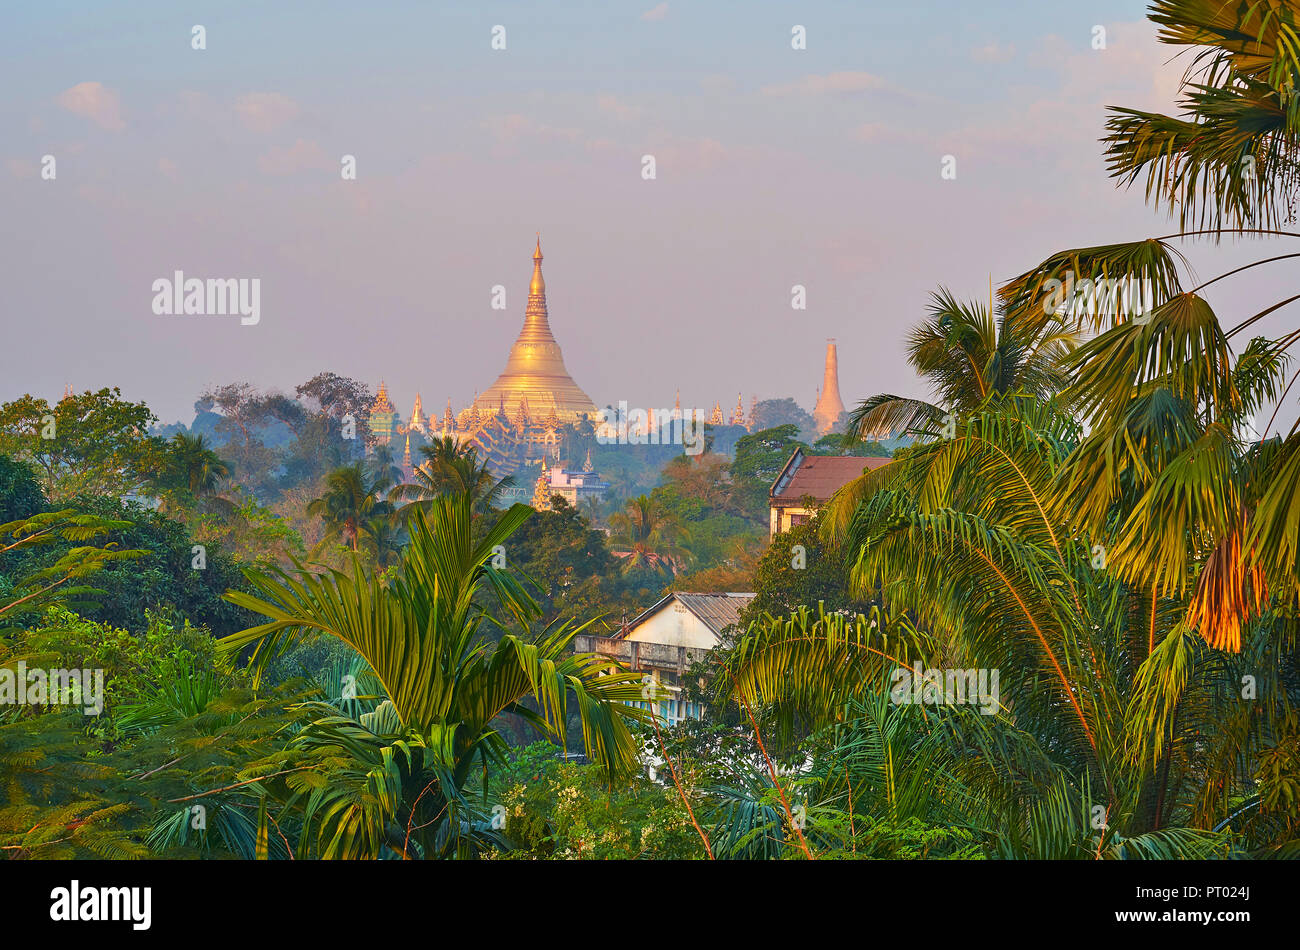 La stupa dorato di Shwedagon Zedi Daw tempio di luce foschia mattutina dietro la lussureggiante vegetazione del giardino, Yangon, Myanmar. Foto Stock